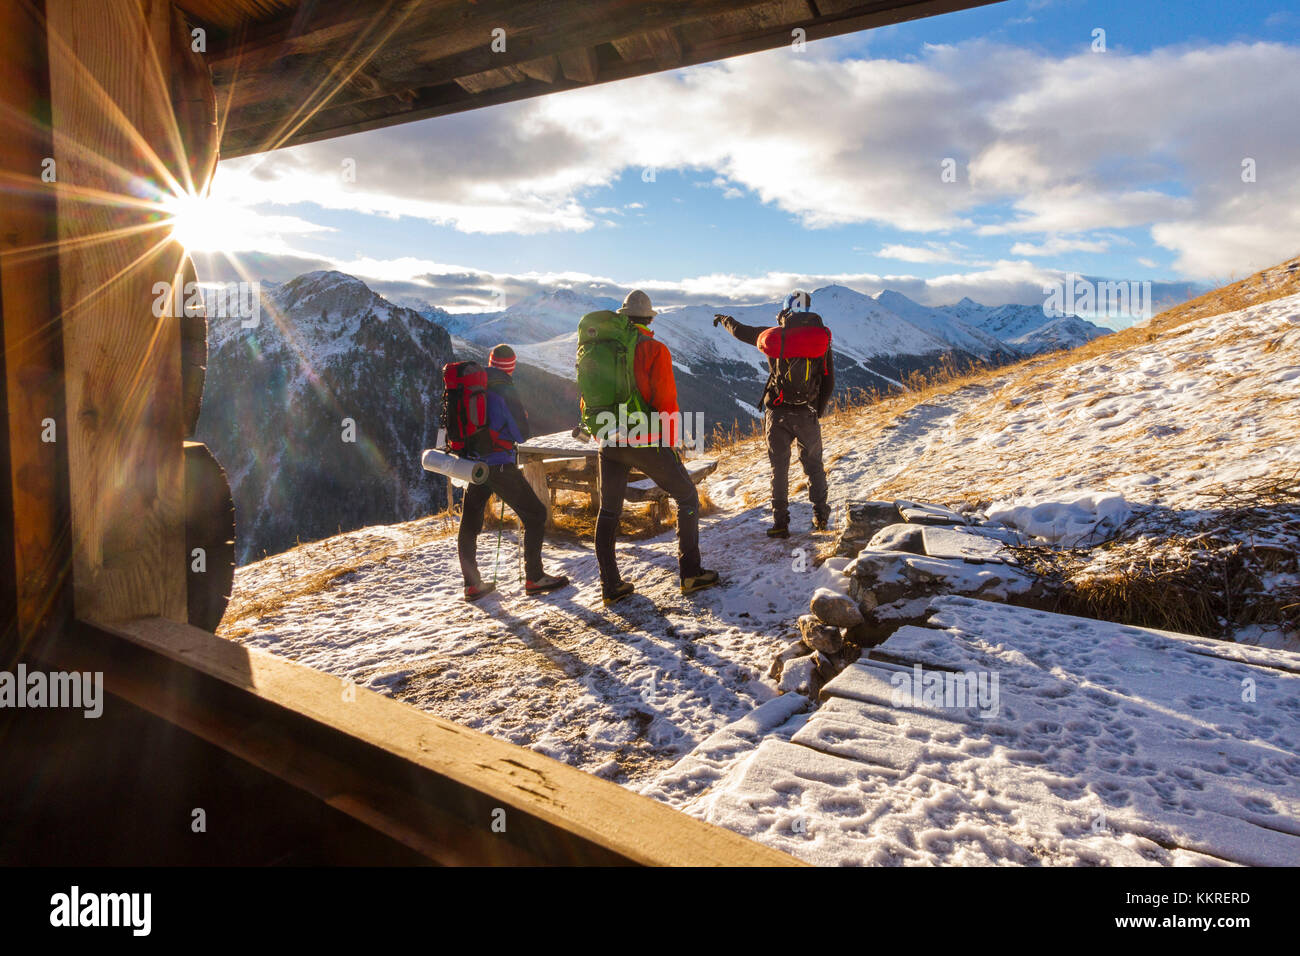 Excursionistas admirando el amanecer desde una cabaña alpina. Livigno, Valtellina, Italia Foto de stock